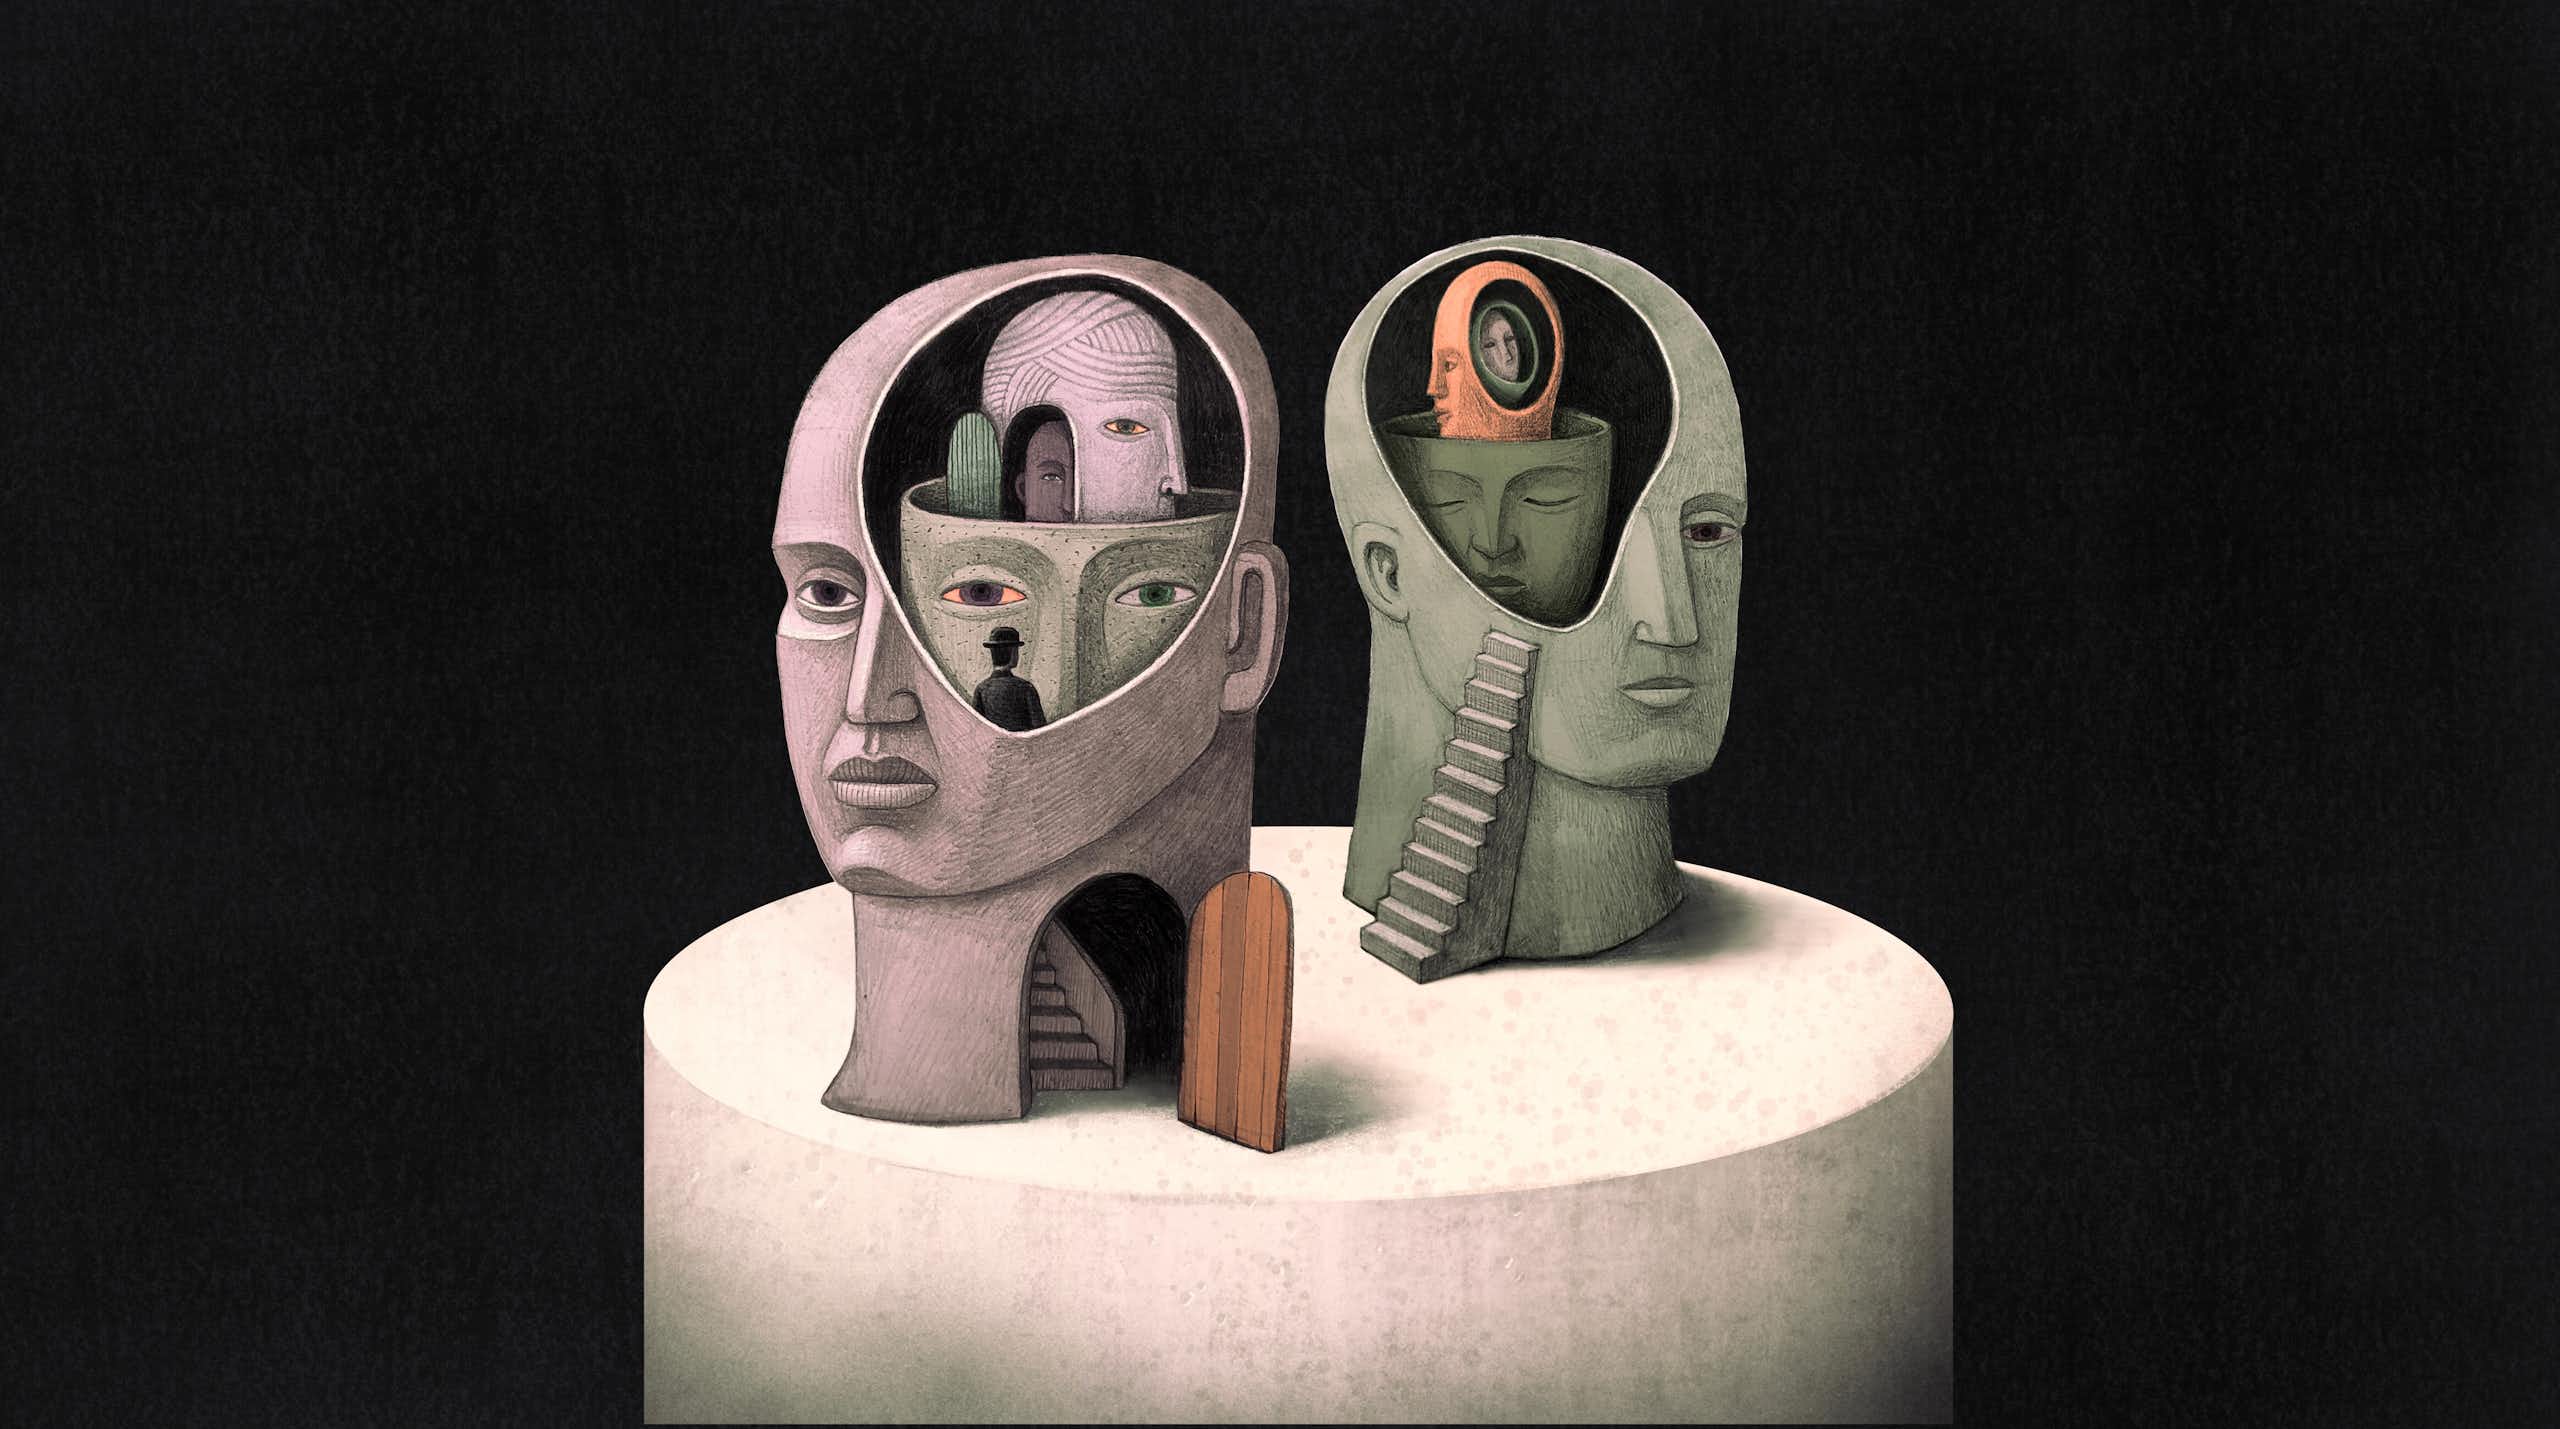 Une illustration surréaliste de deux têtes avec des portes et des escaliers et d'autres têtes à l'intérieur.